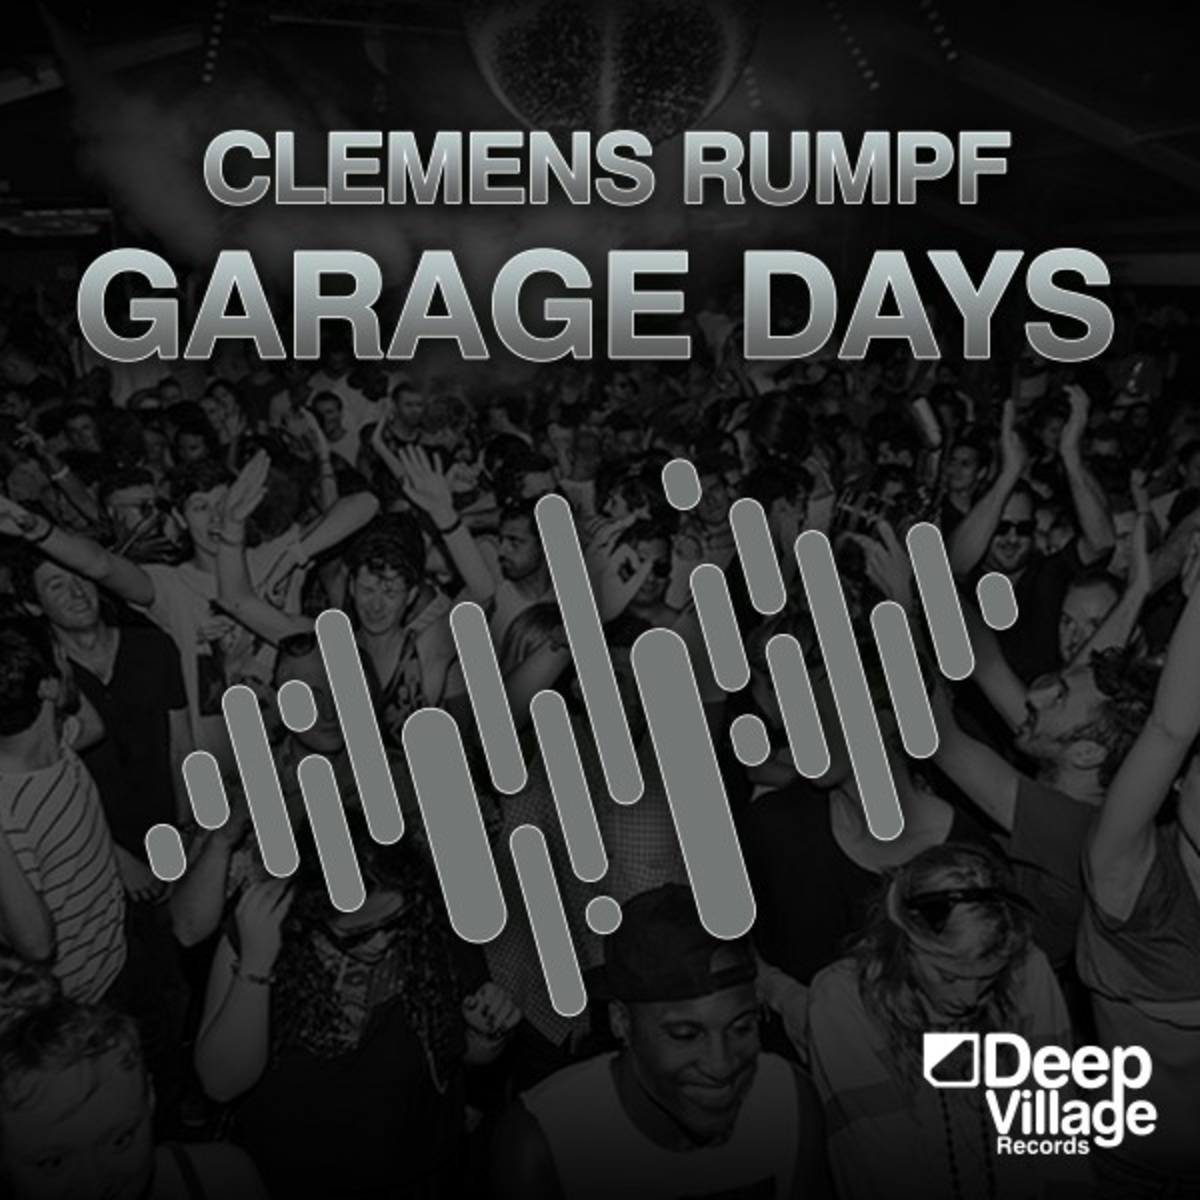 Clemens Rumpf - Garage Days / Deep Village Digital Records